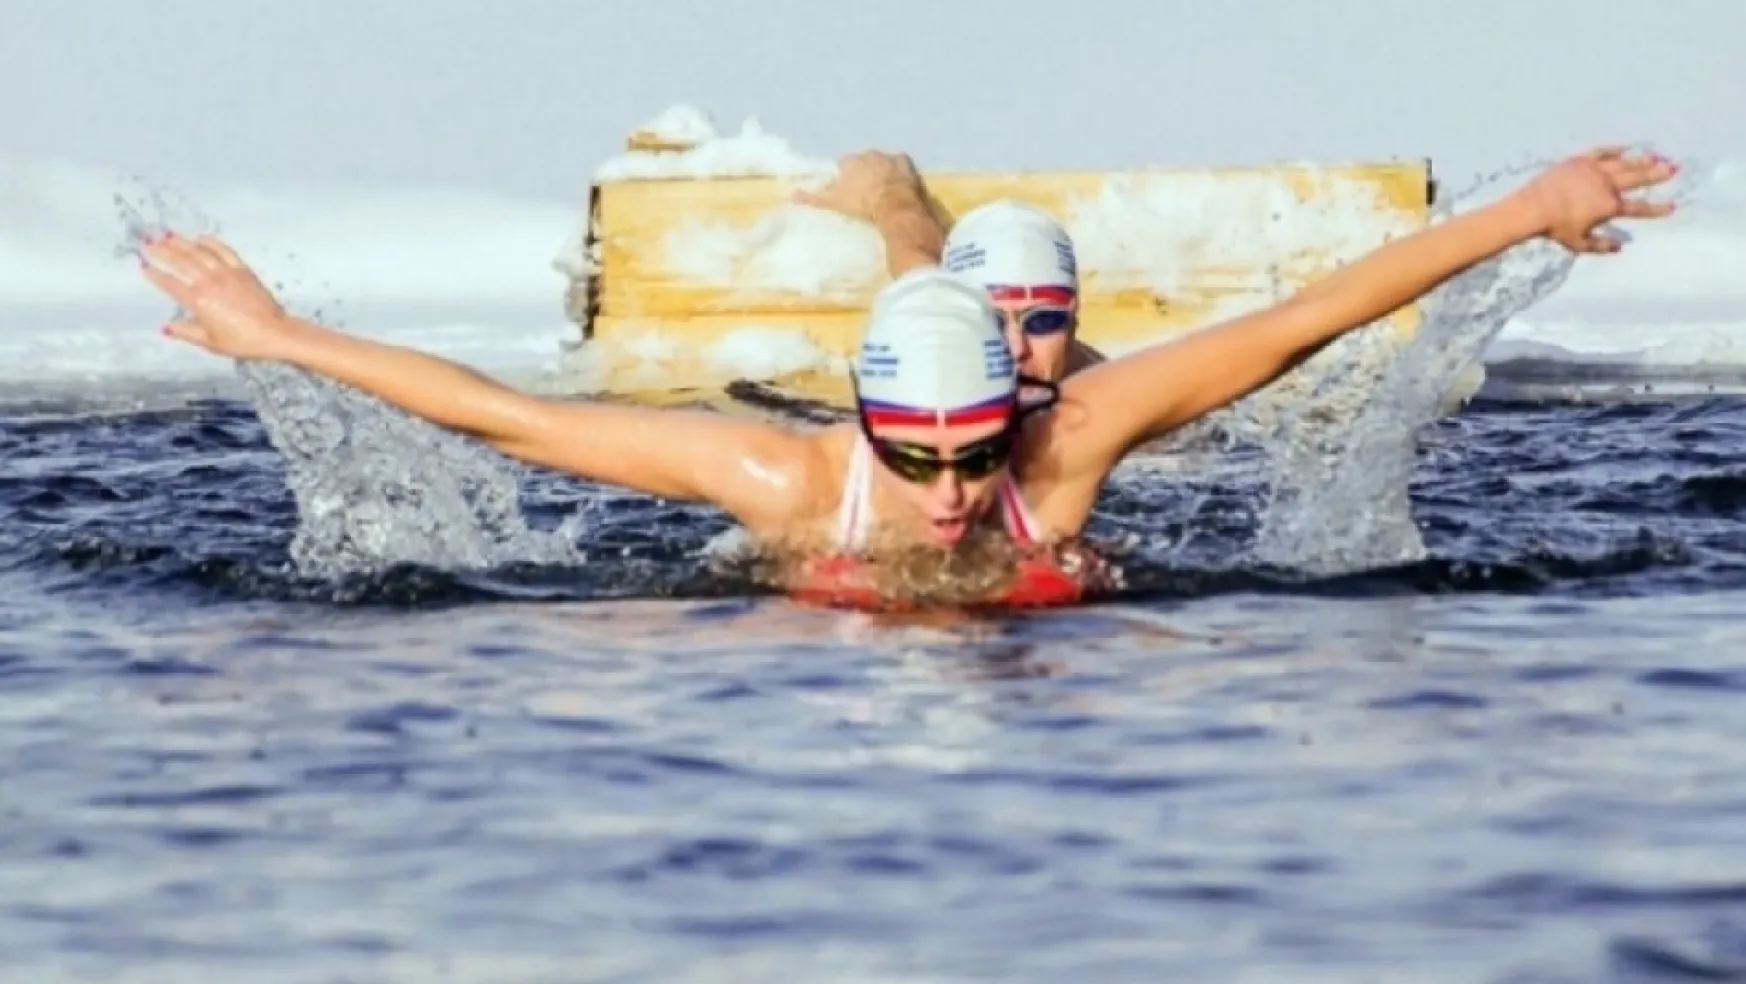 Buzlu suda Türk kızı 1 saat kalarak rekor kırdı